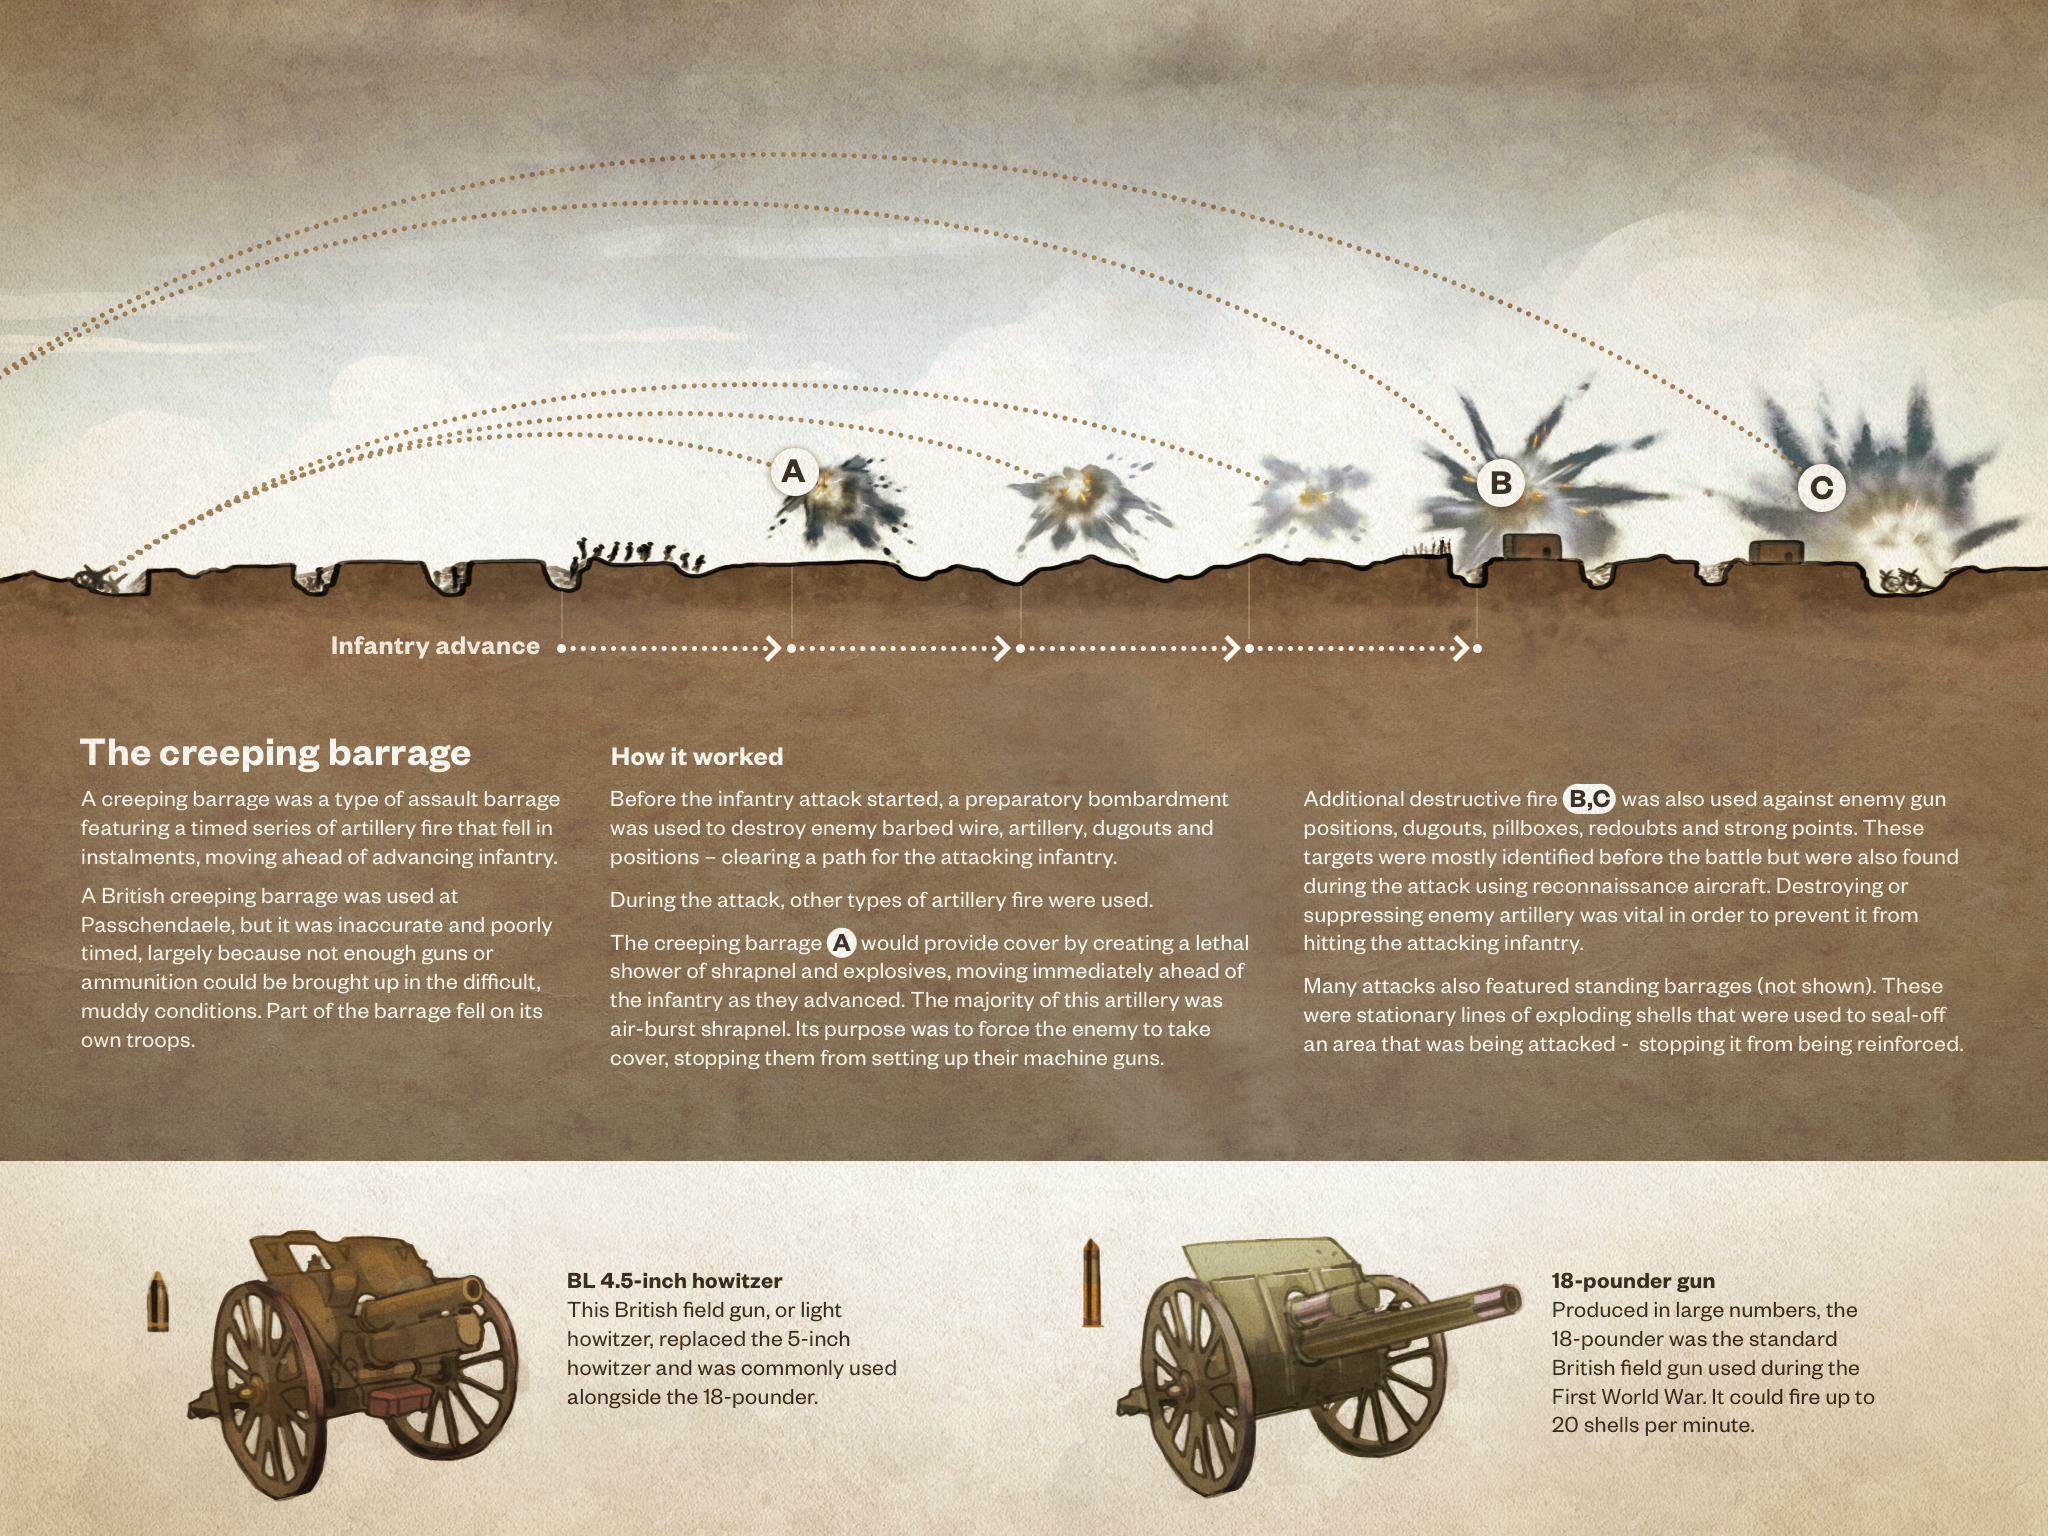 Artillery of the First World War